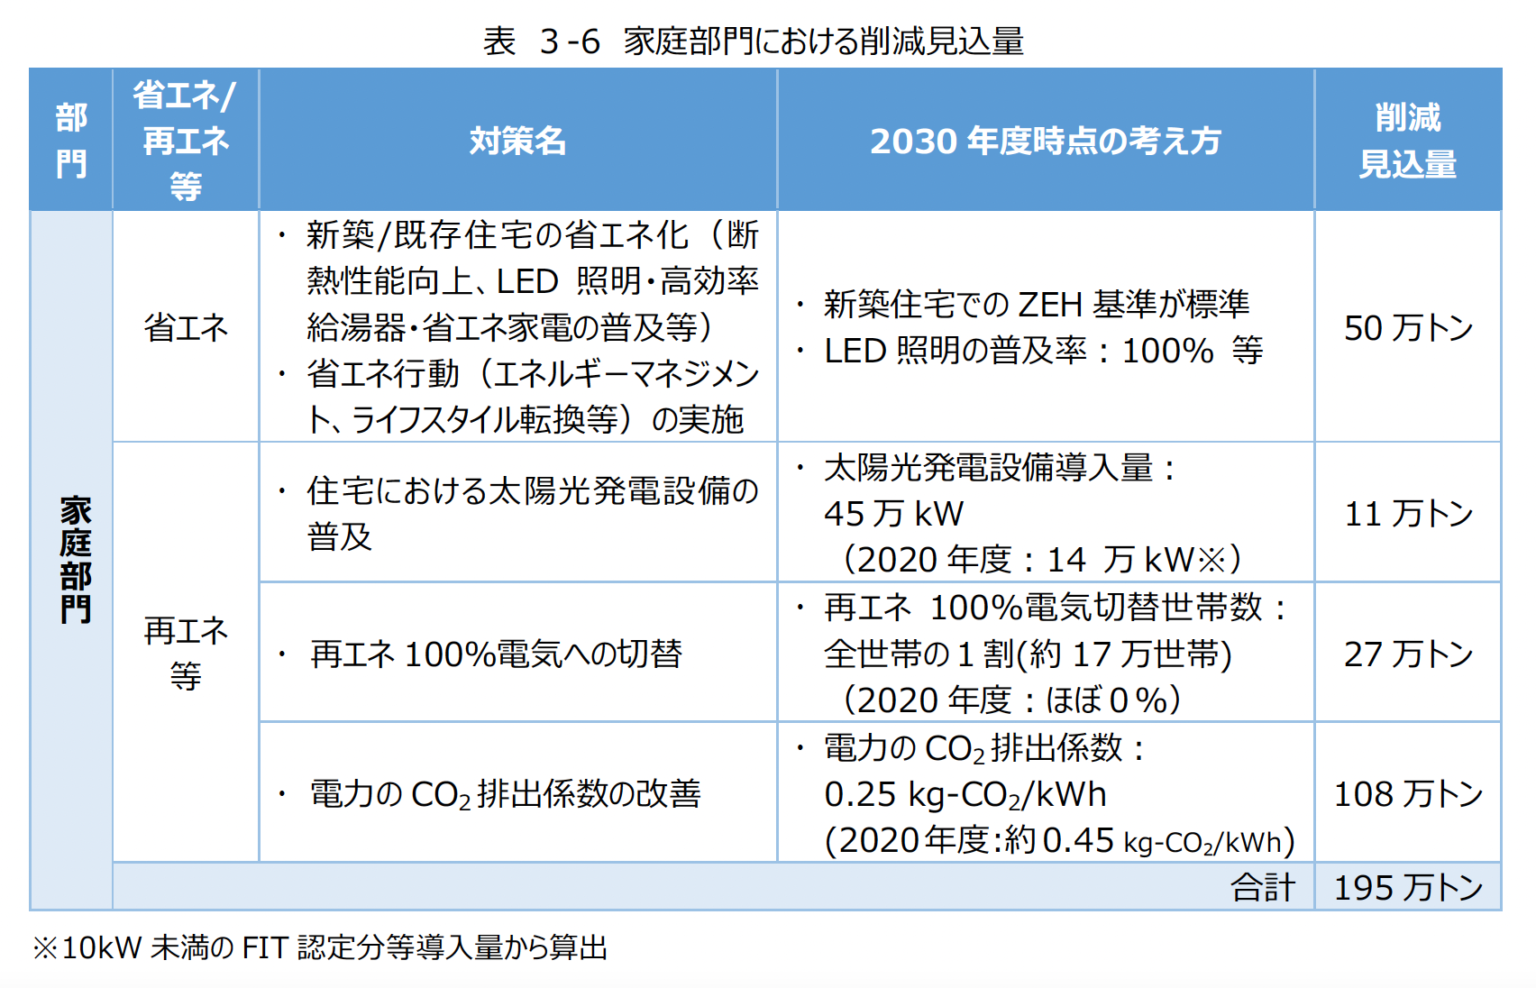 横浜市温暖化対策実行計画素案より「表3-6 家庭部門における削減見込量」